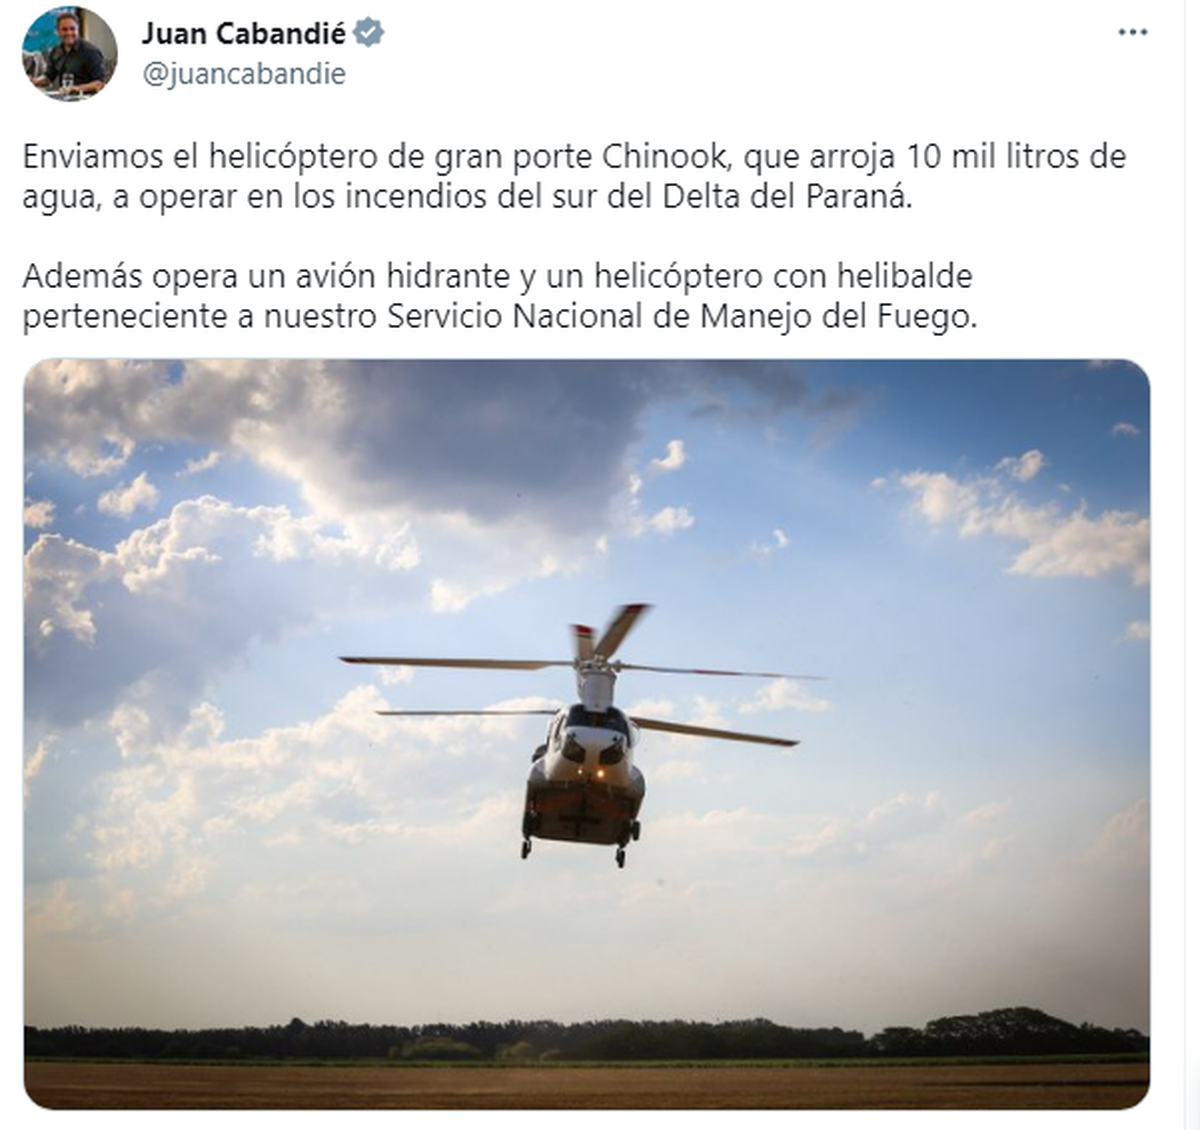 El TE de Juan Cabandi&eacute;, Ministro de Ambiente y Desarrollo Sostenible.